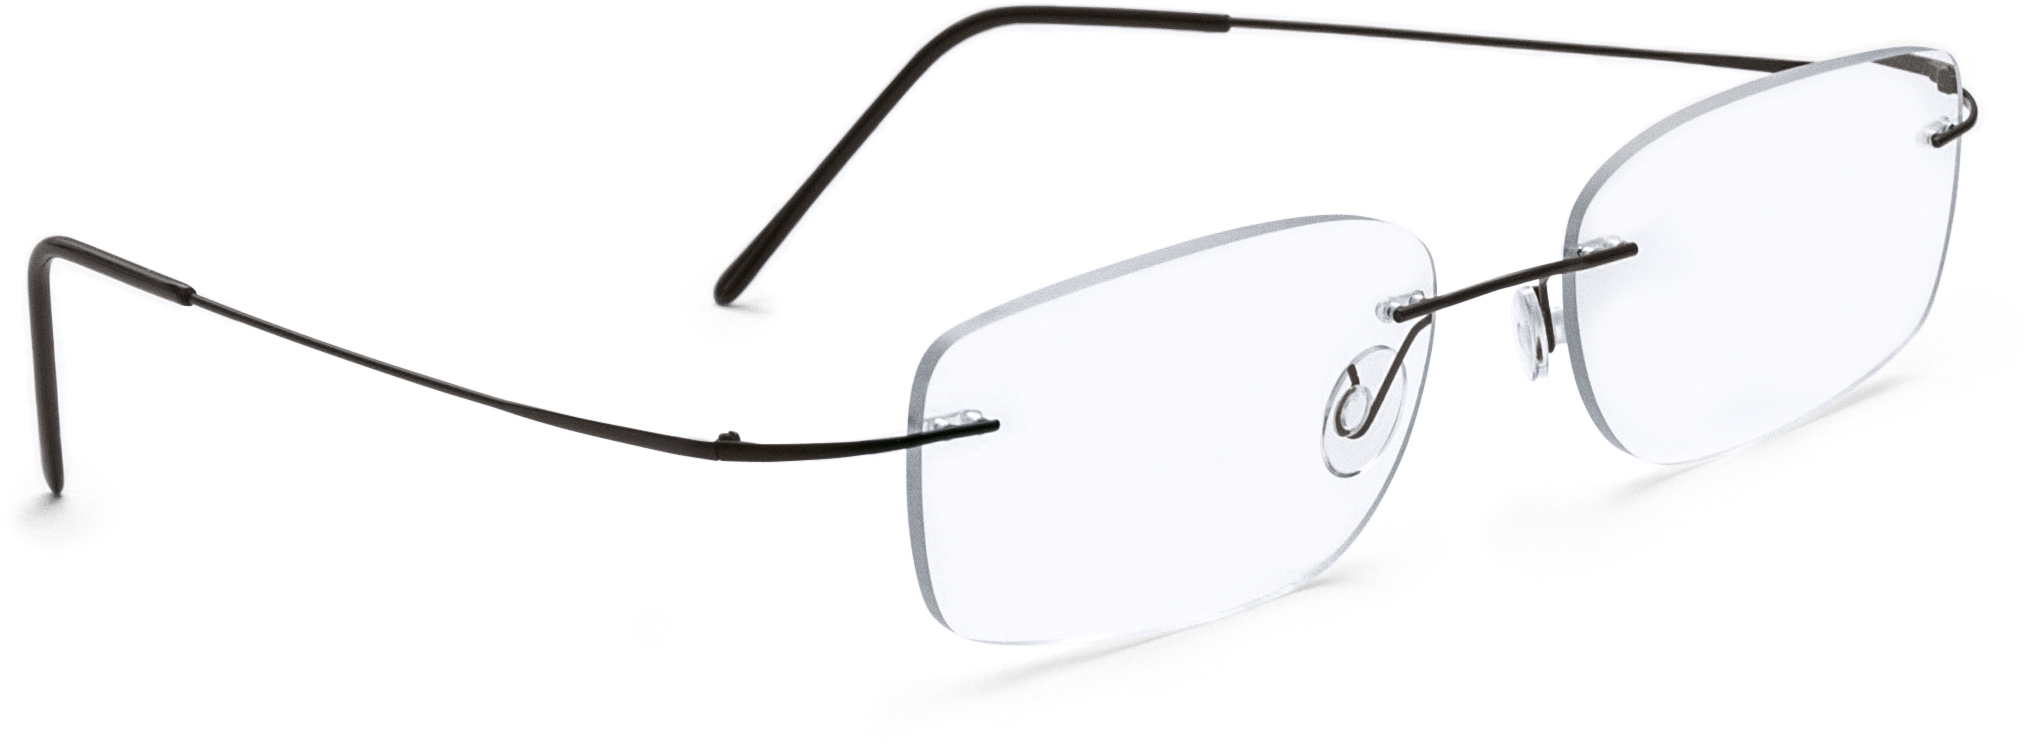 Hülsenbohrbrille mit Scharnierbügel Schwarz